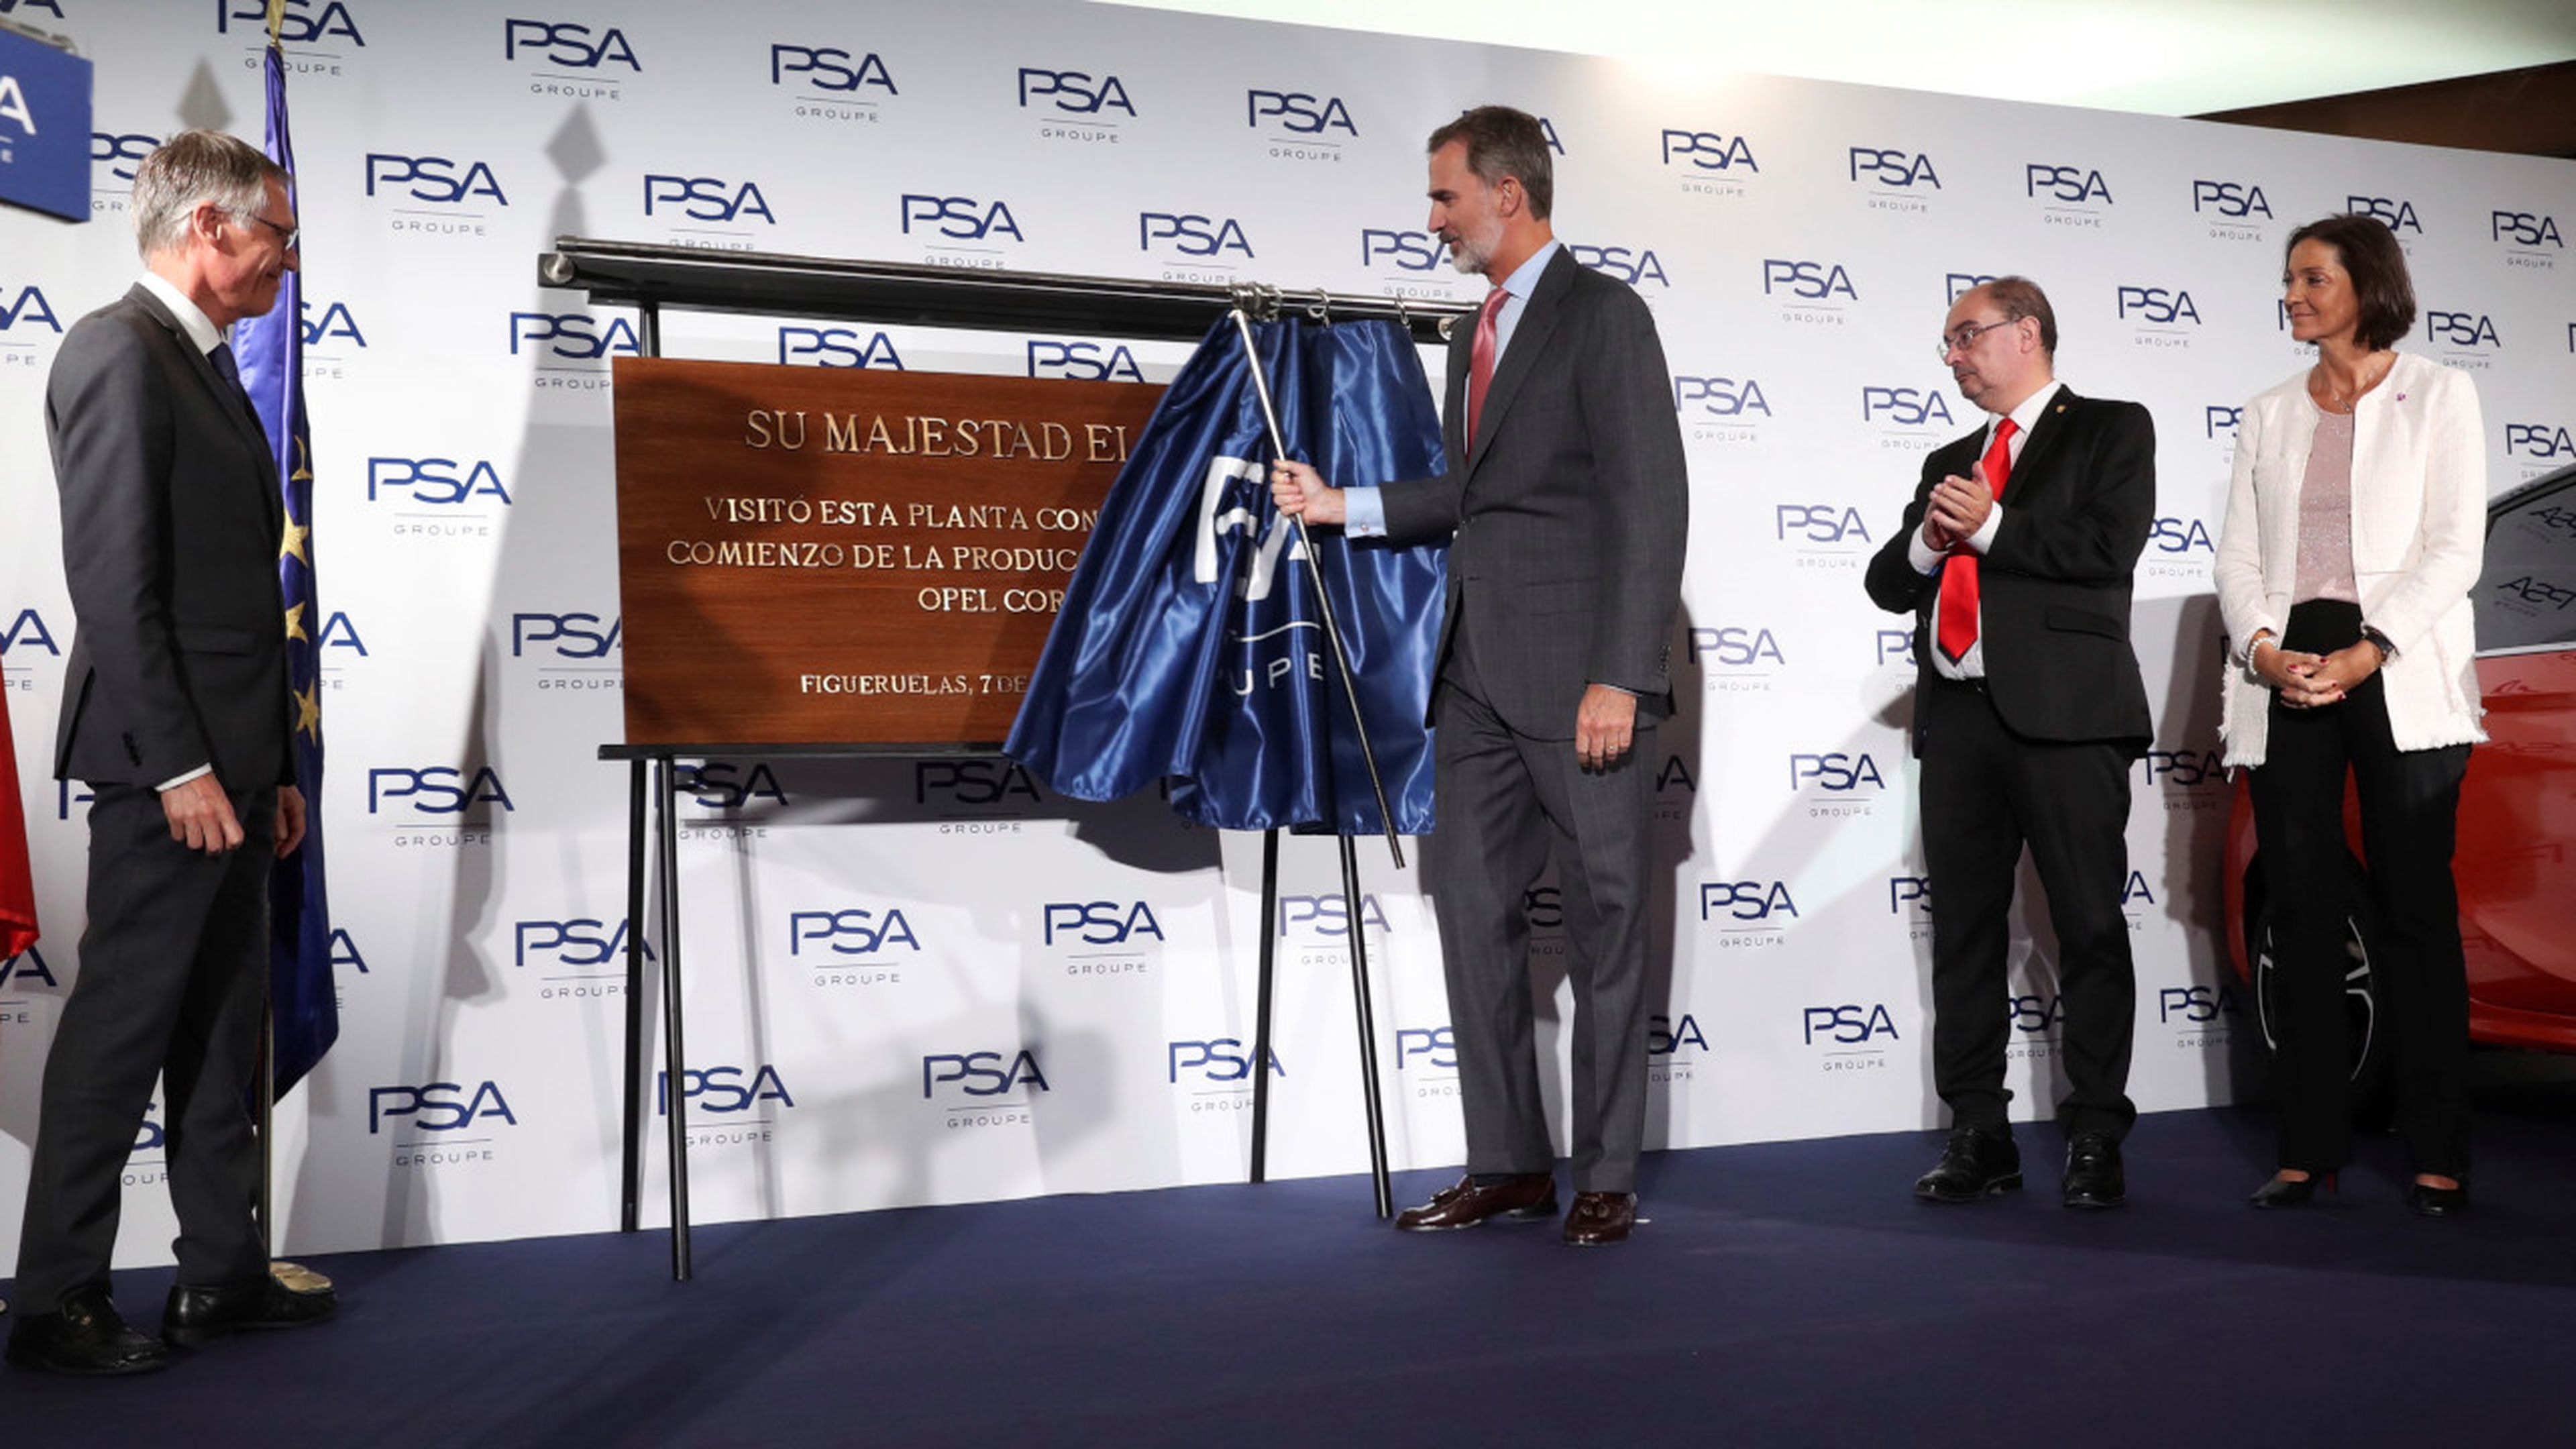 Felipe VI descubriendo la placa en su honor en la planta de PSA en Zaragoza.